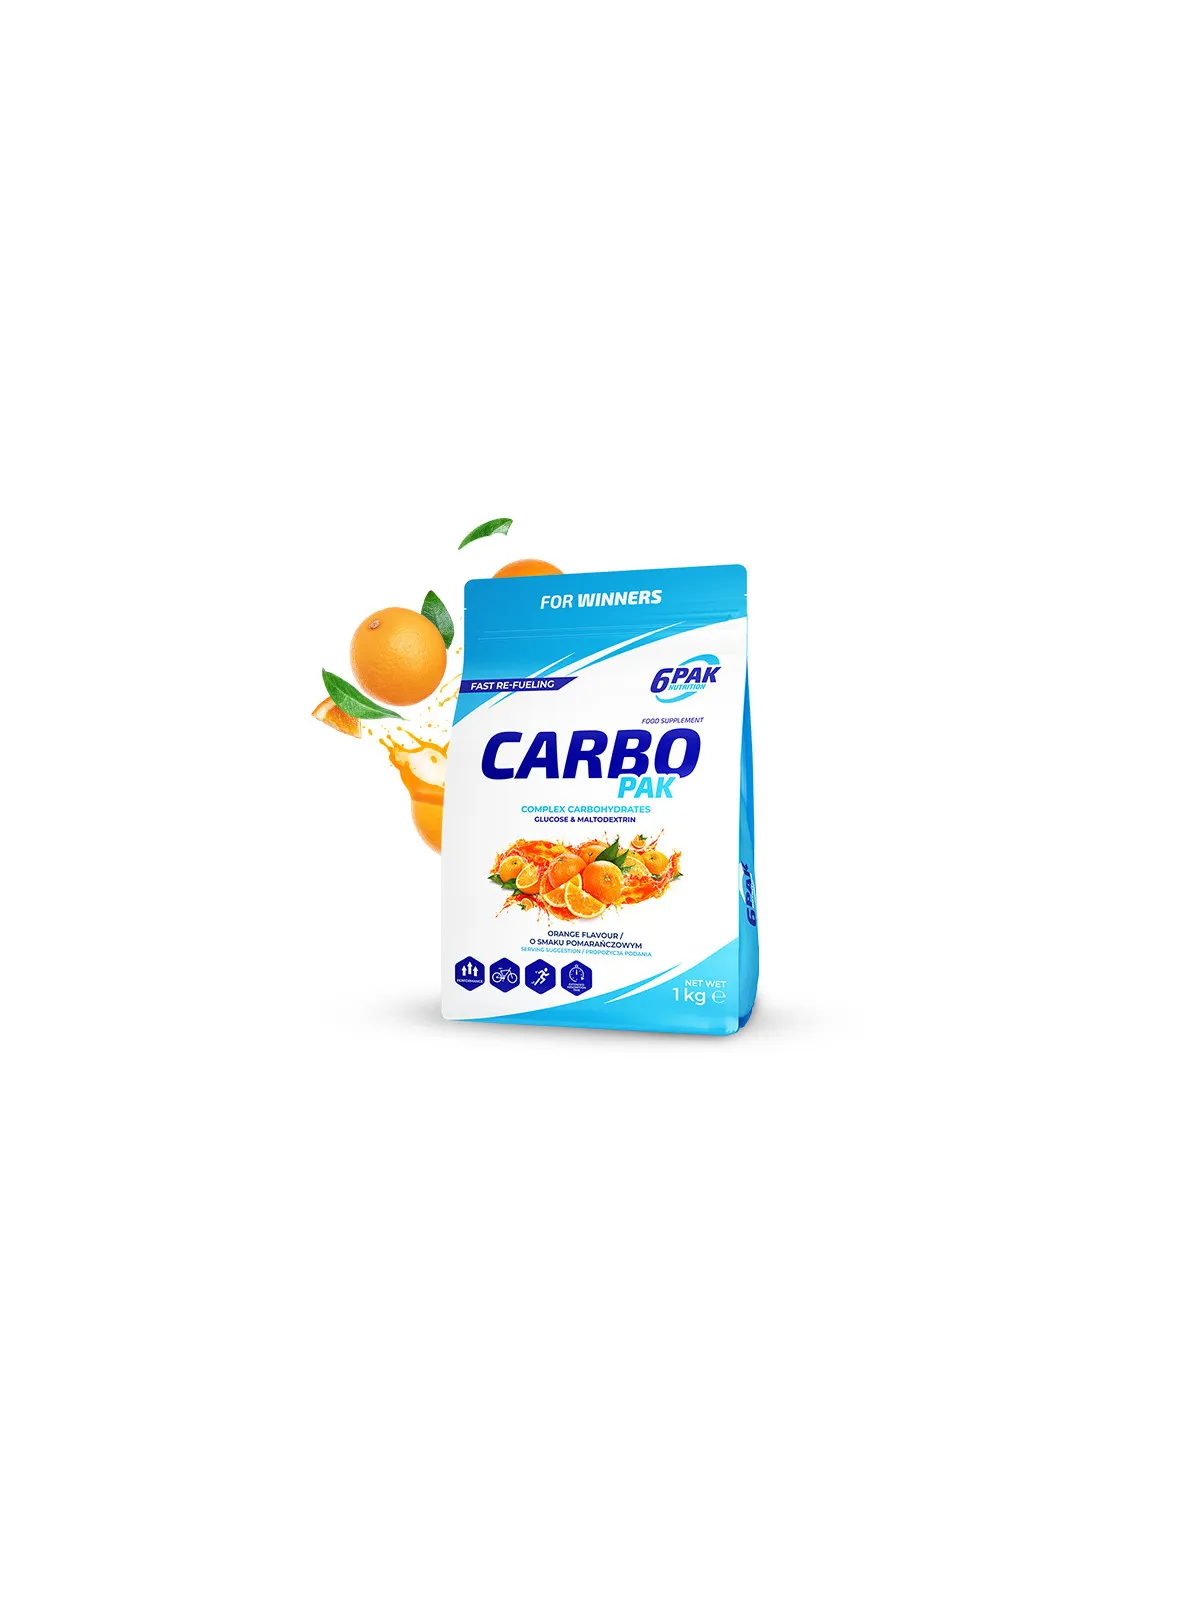 Carbo PAK - Węglowodany w proszku - 1000g - Orange